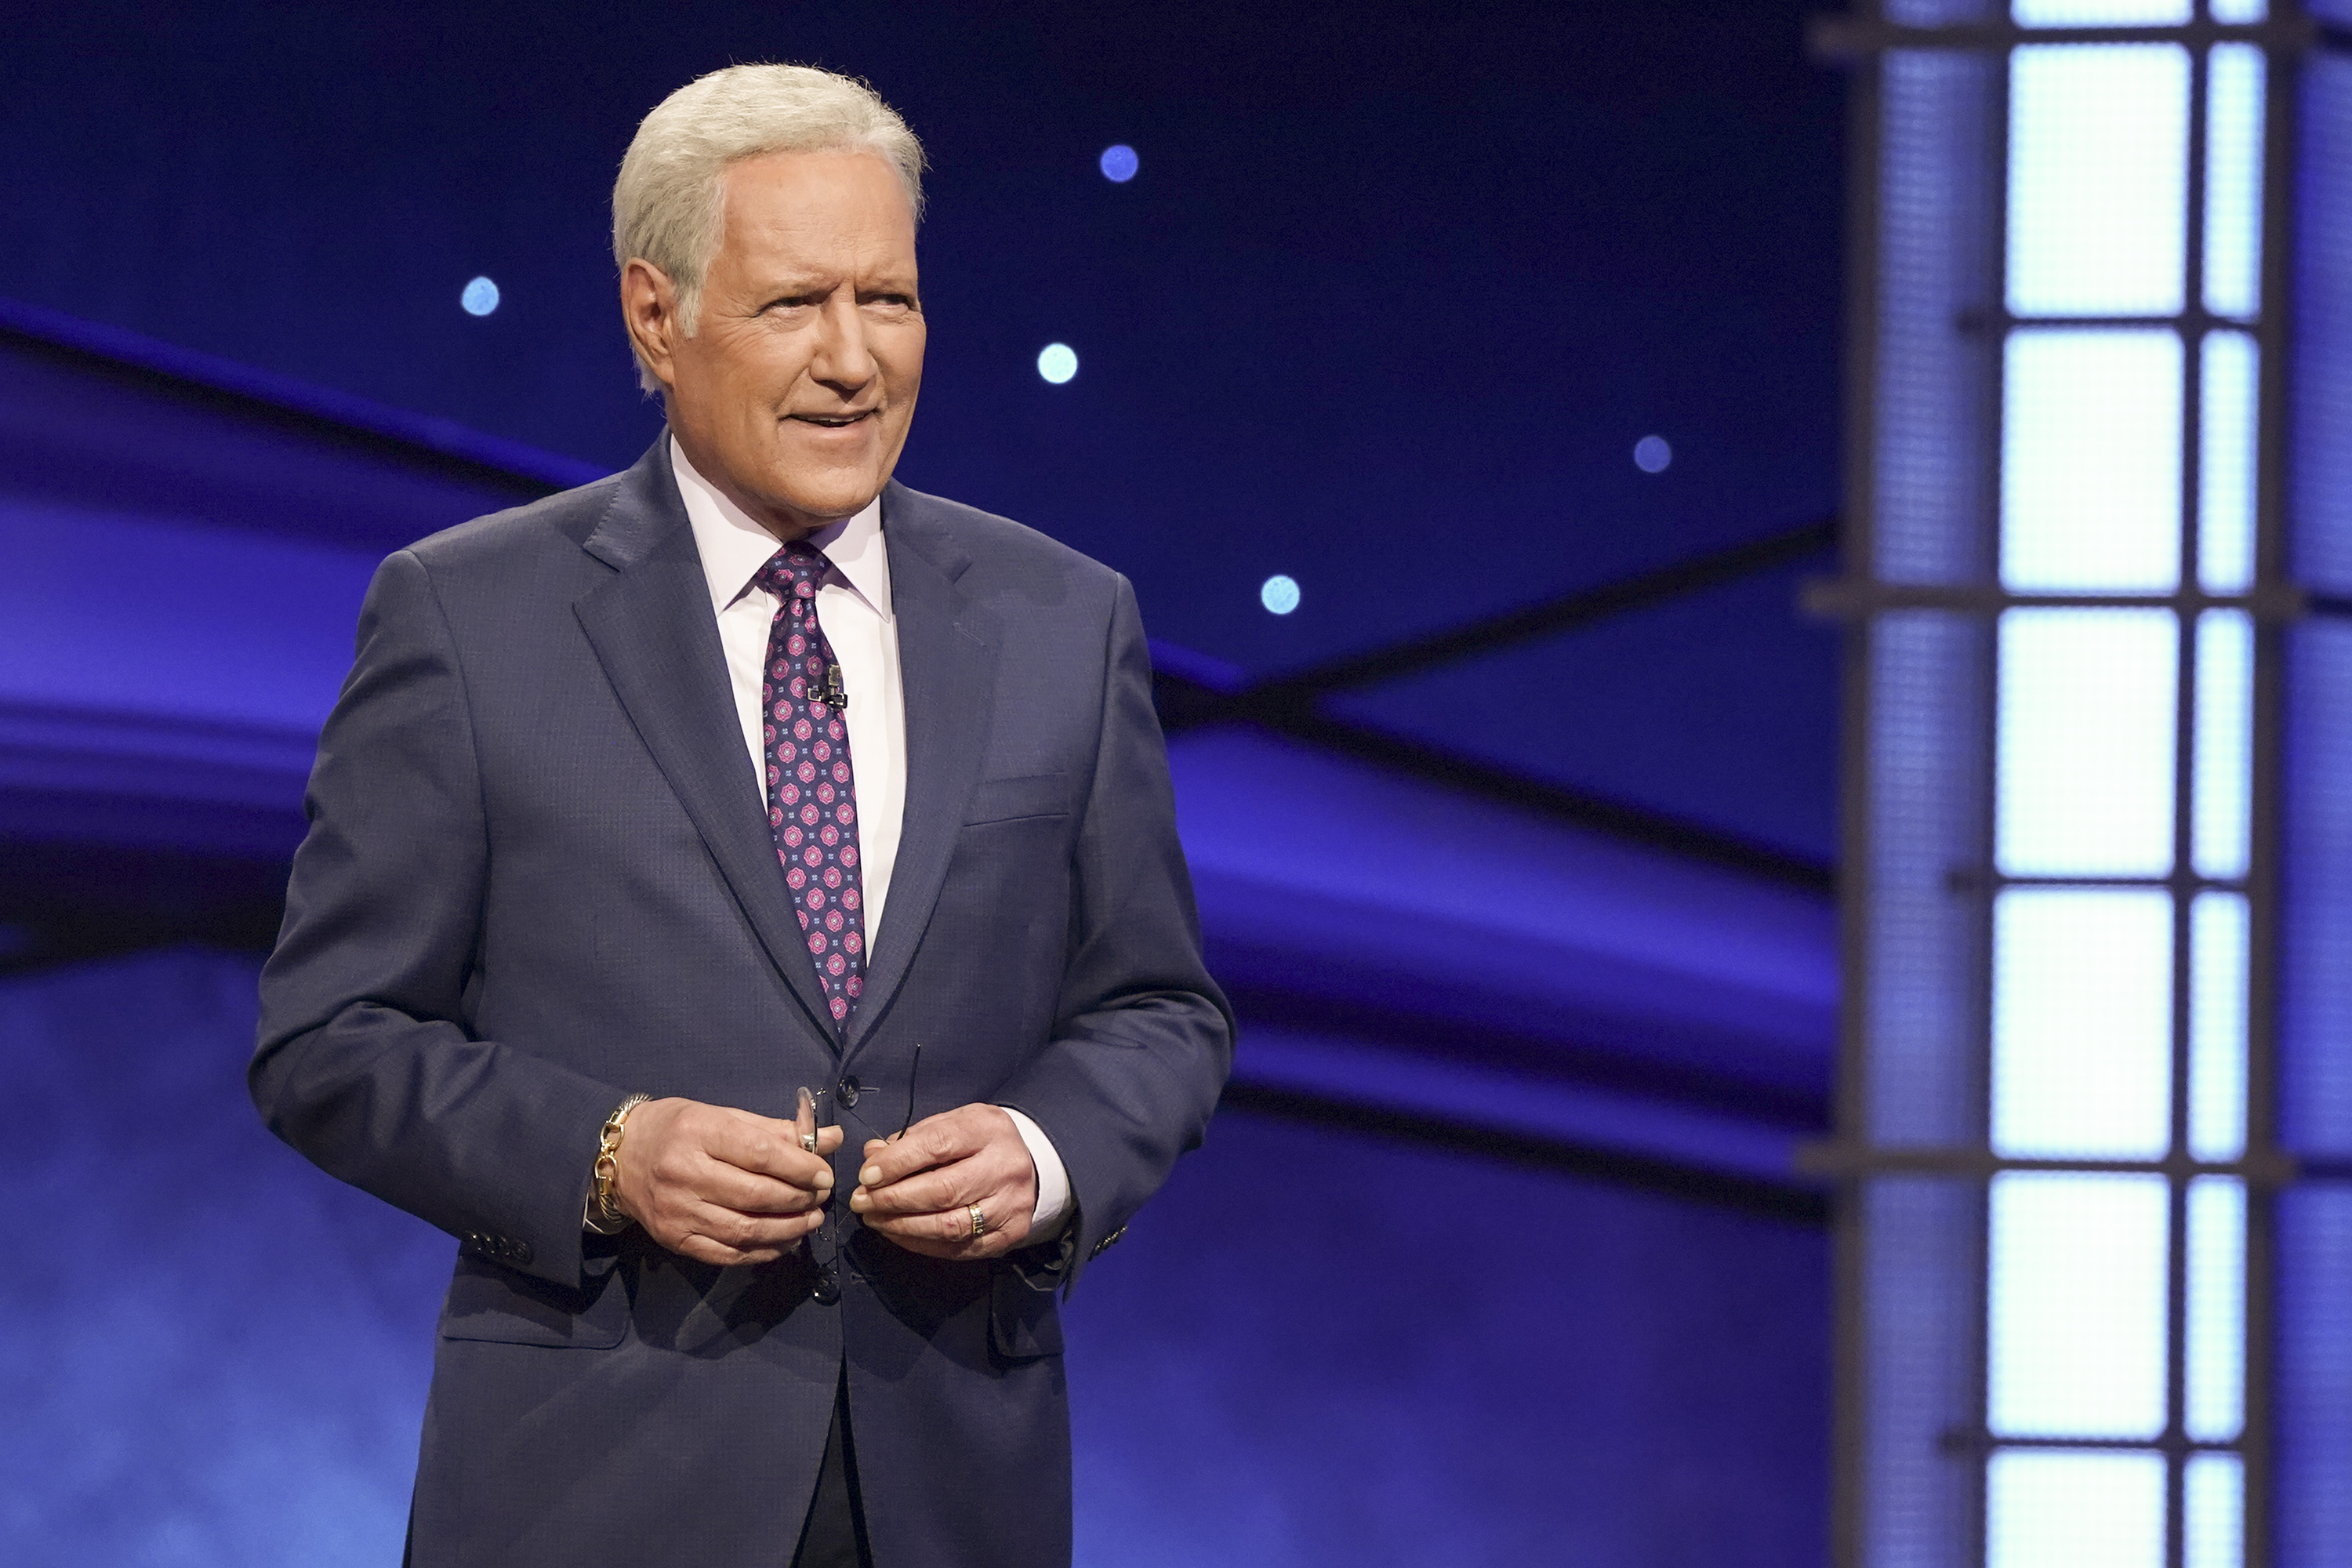 The late 'Jeopardy!' host Alex Trebek